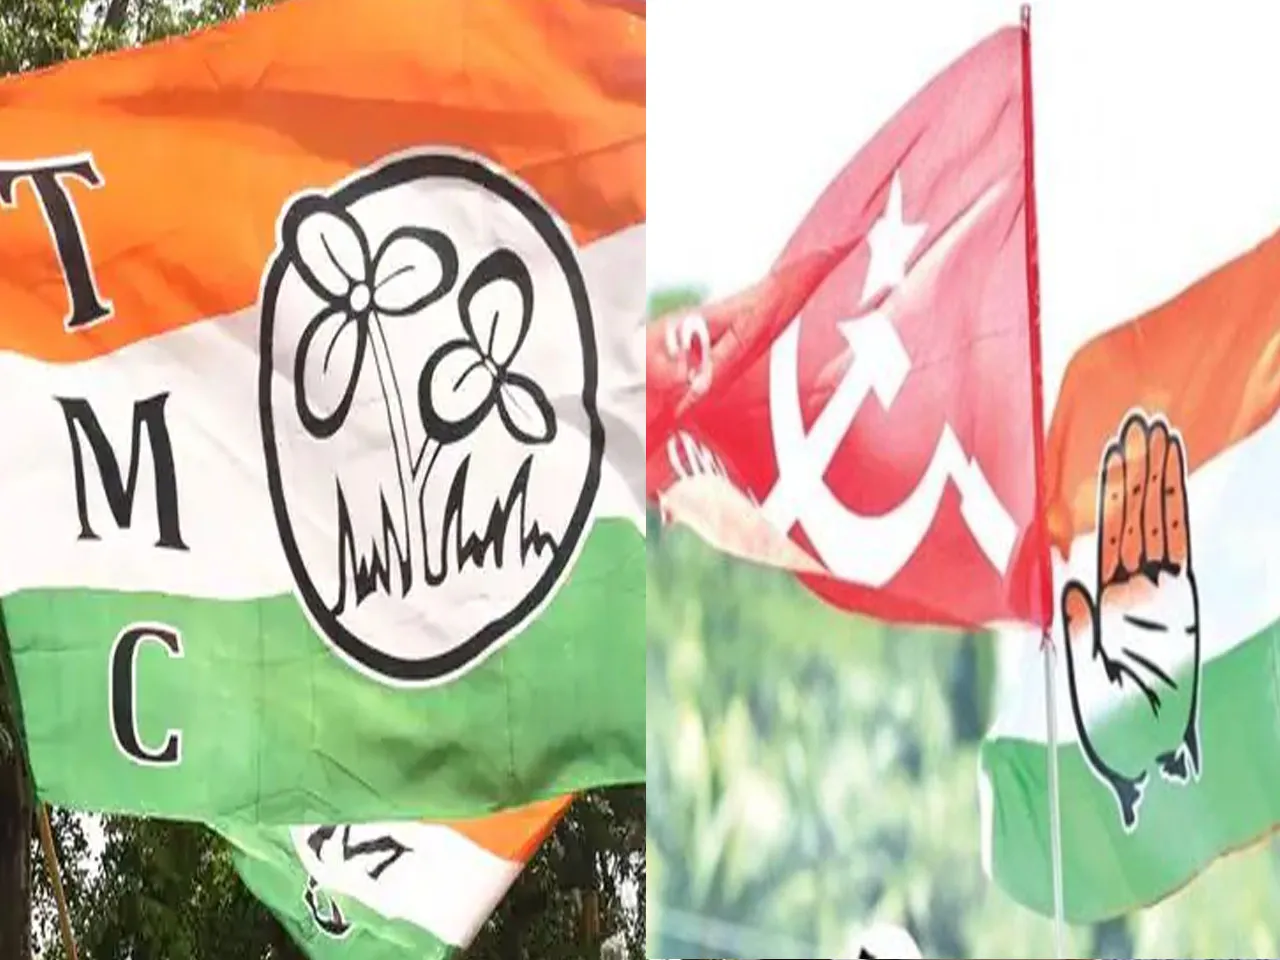 পশ্চিমবঙ্গের 40% OBCদের ঠকিয়েছে বামফ্রন্ট-TMC! ফাঁস করলেন BJP নেতা